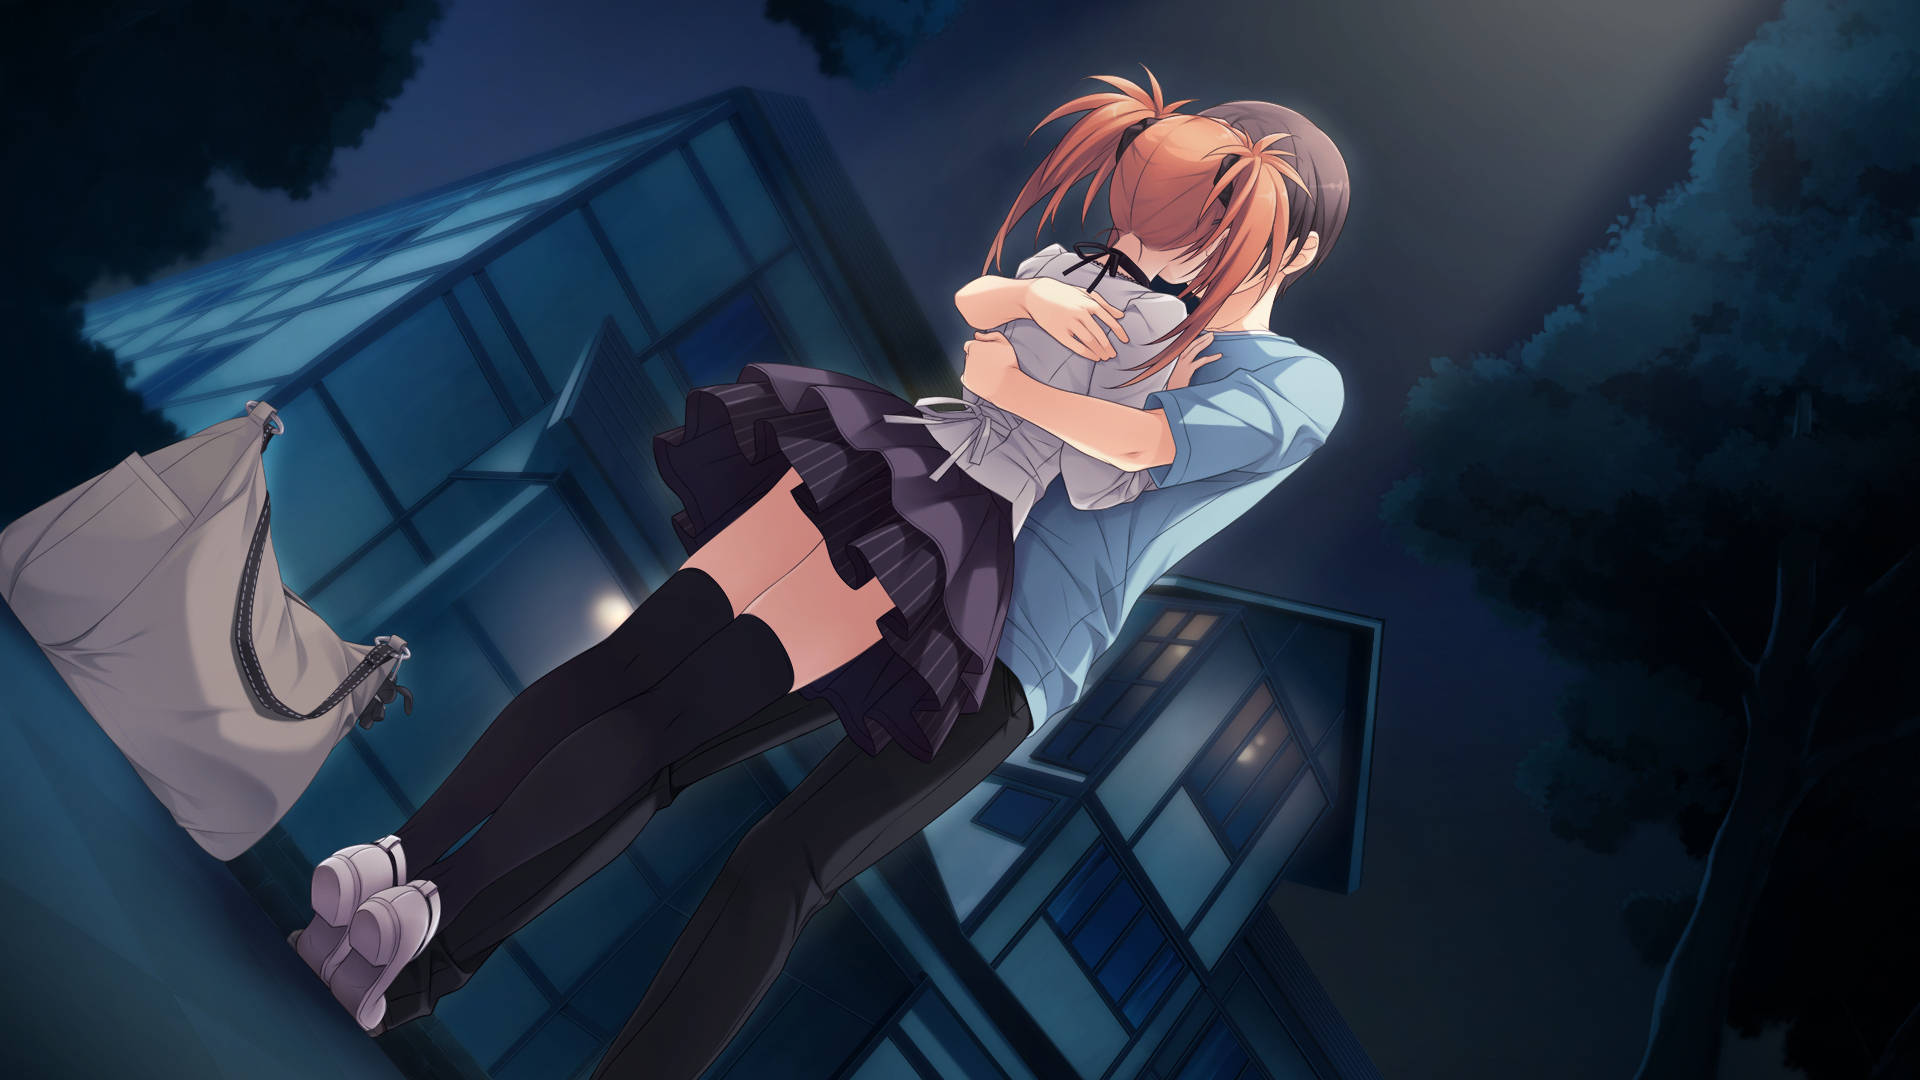 Schoolgirl Anime Hug Background